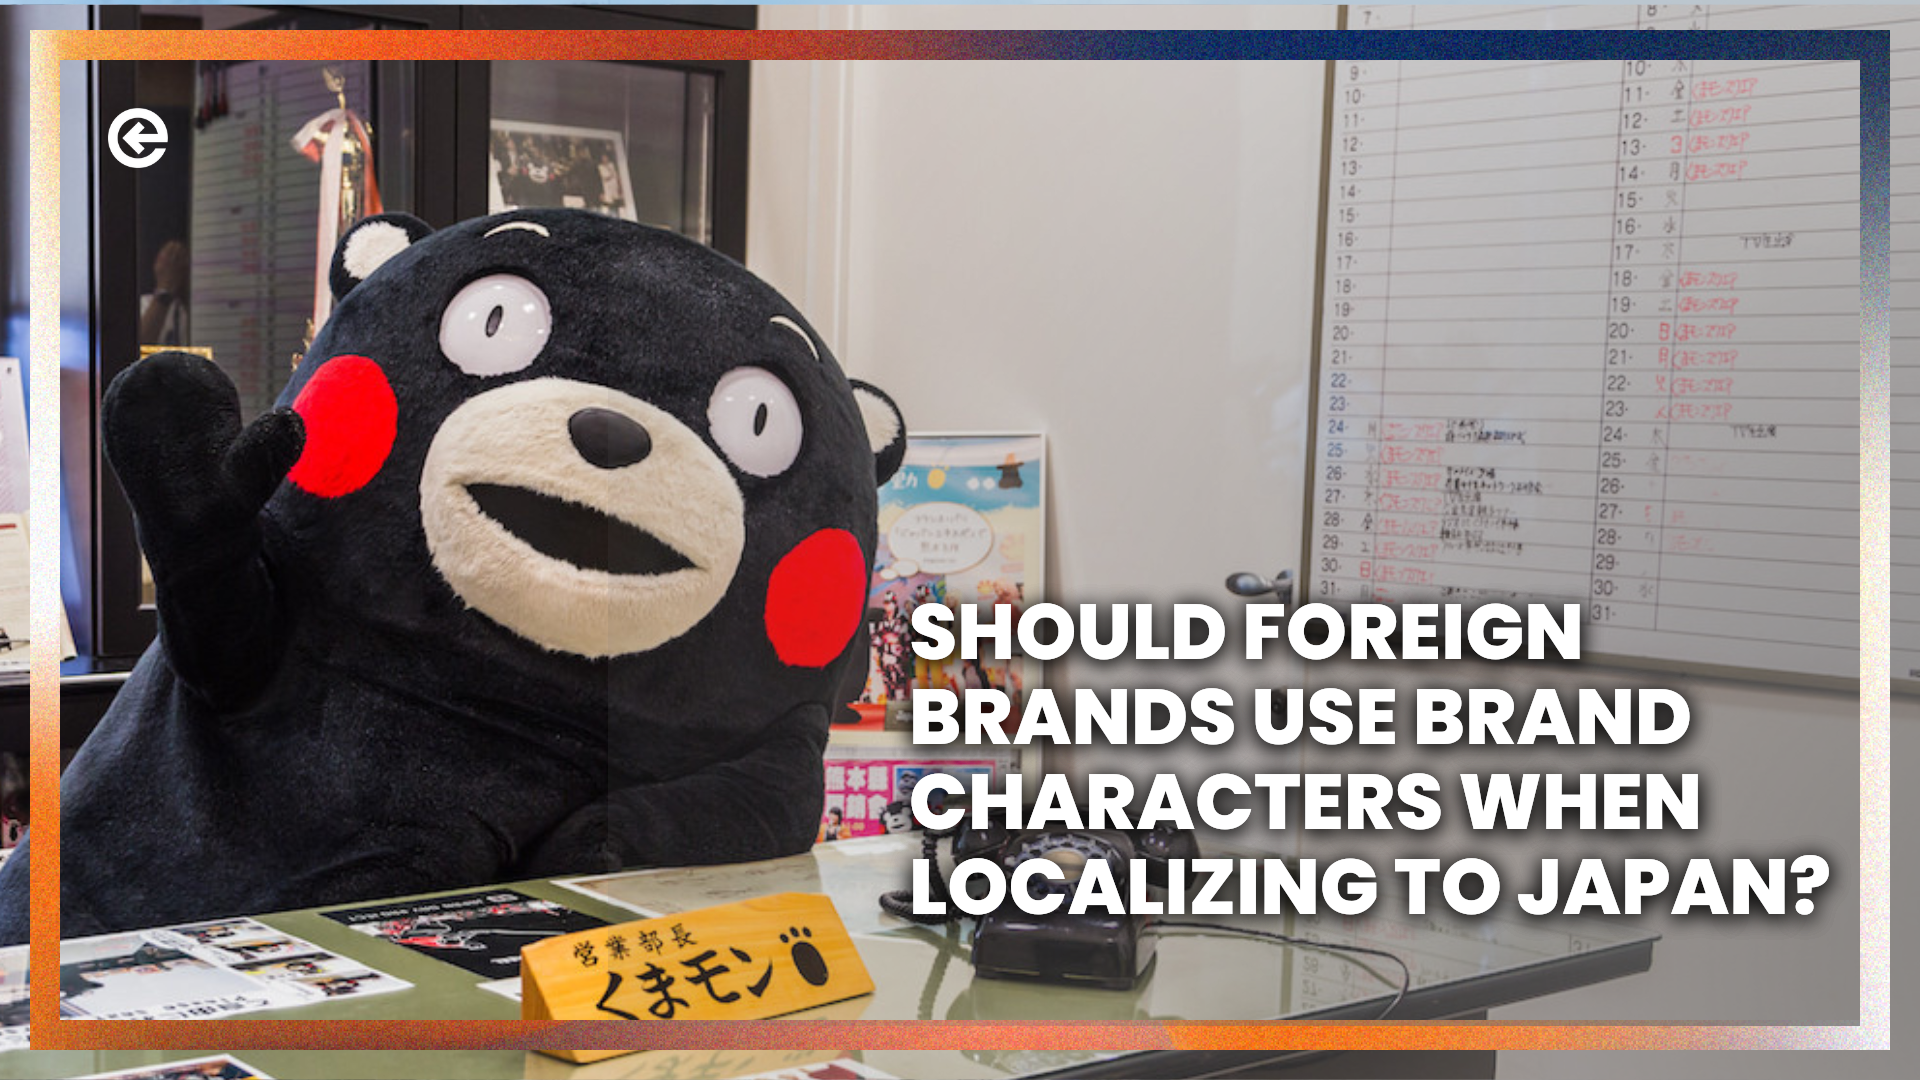 Sollten ausländische Marken bei der Lokalisierung in Japan Markenzeichen verwenden? 